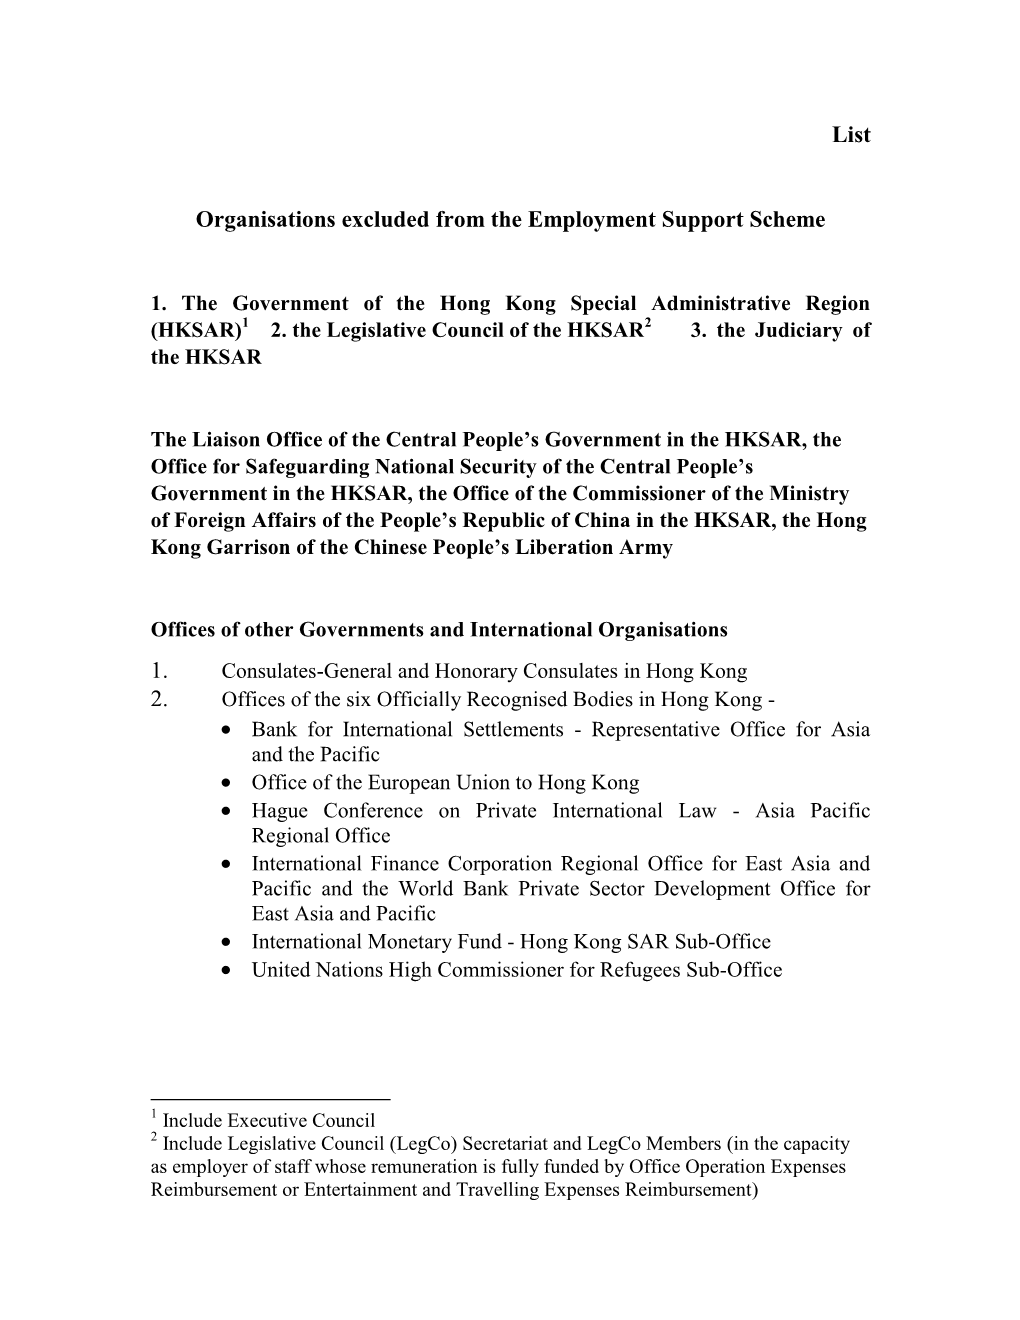 Tranche 2 Employment Support Scheme Exclusion List